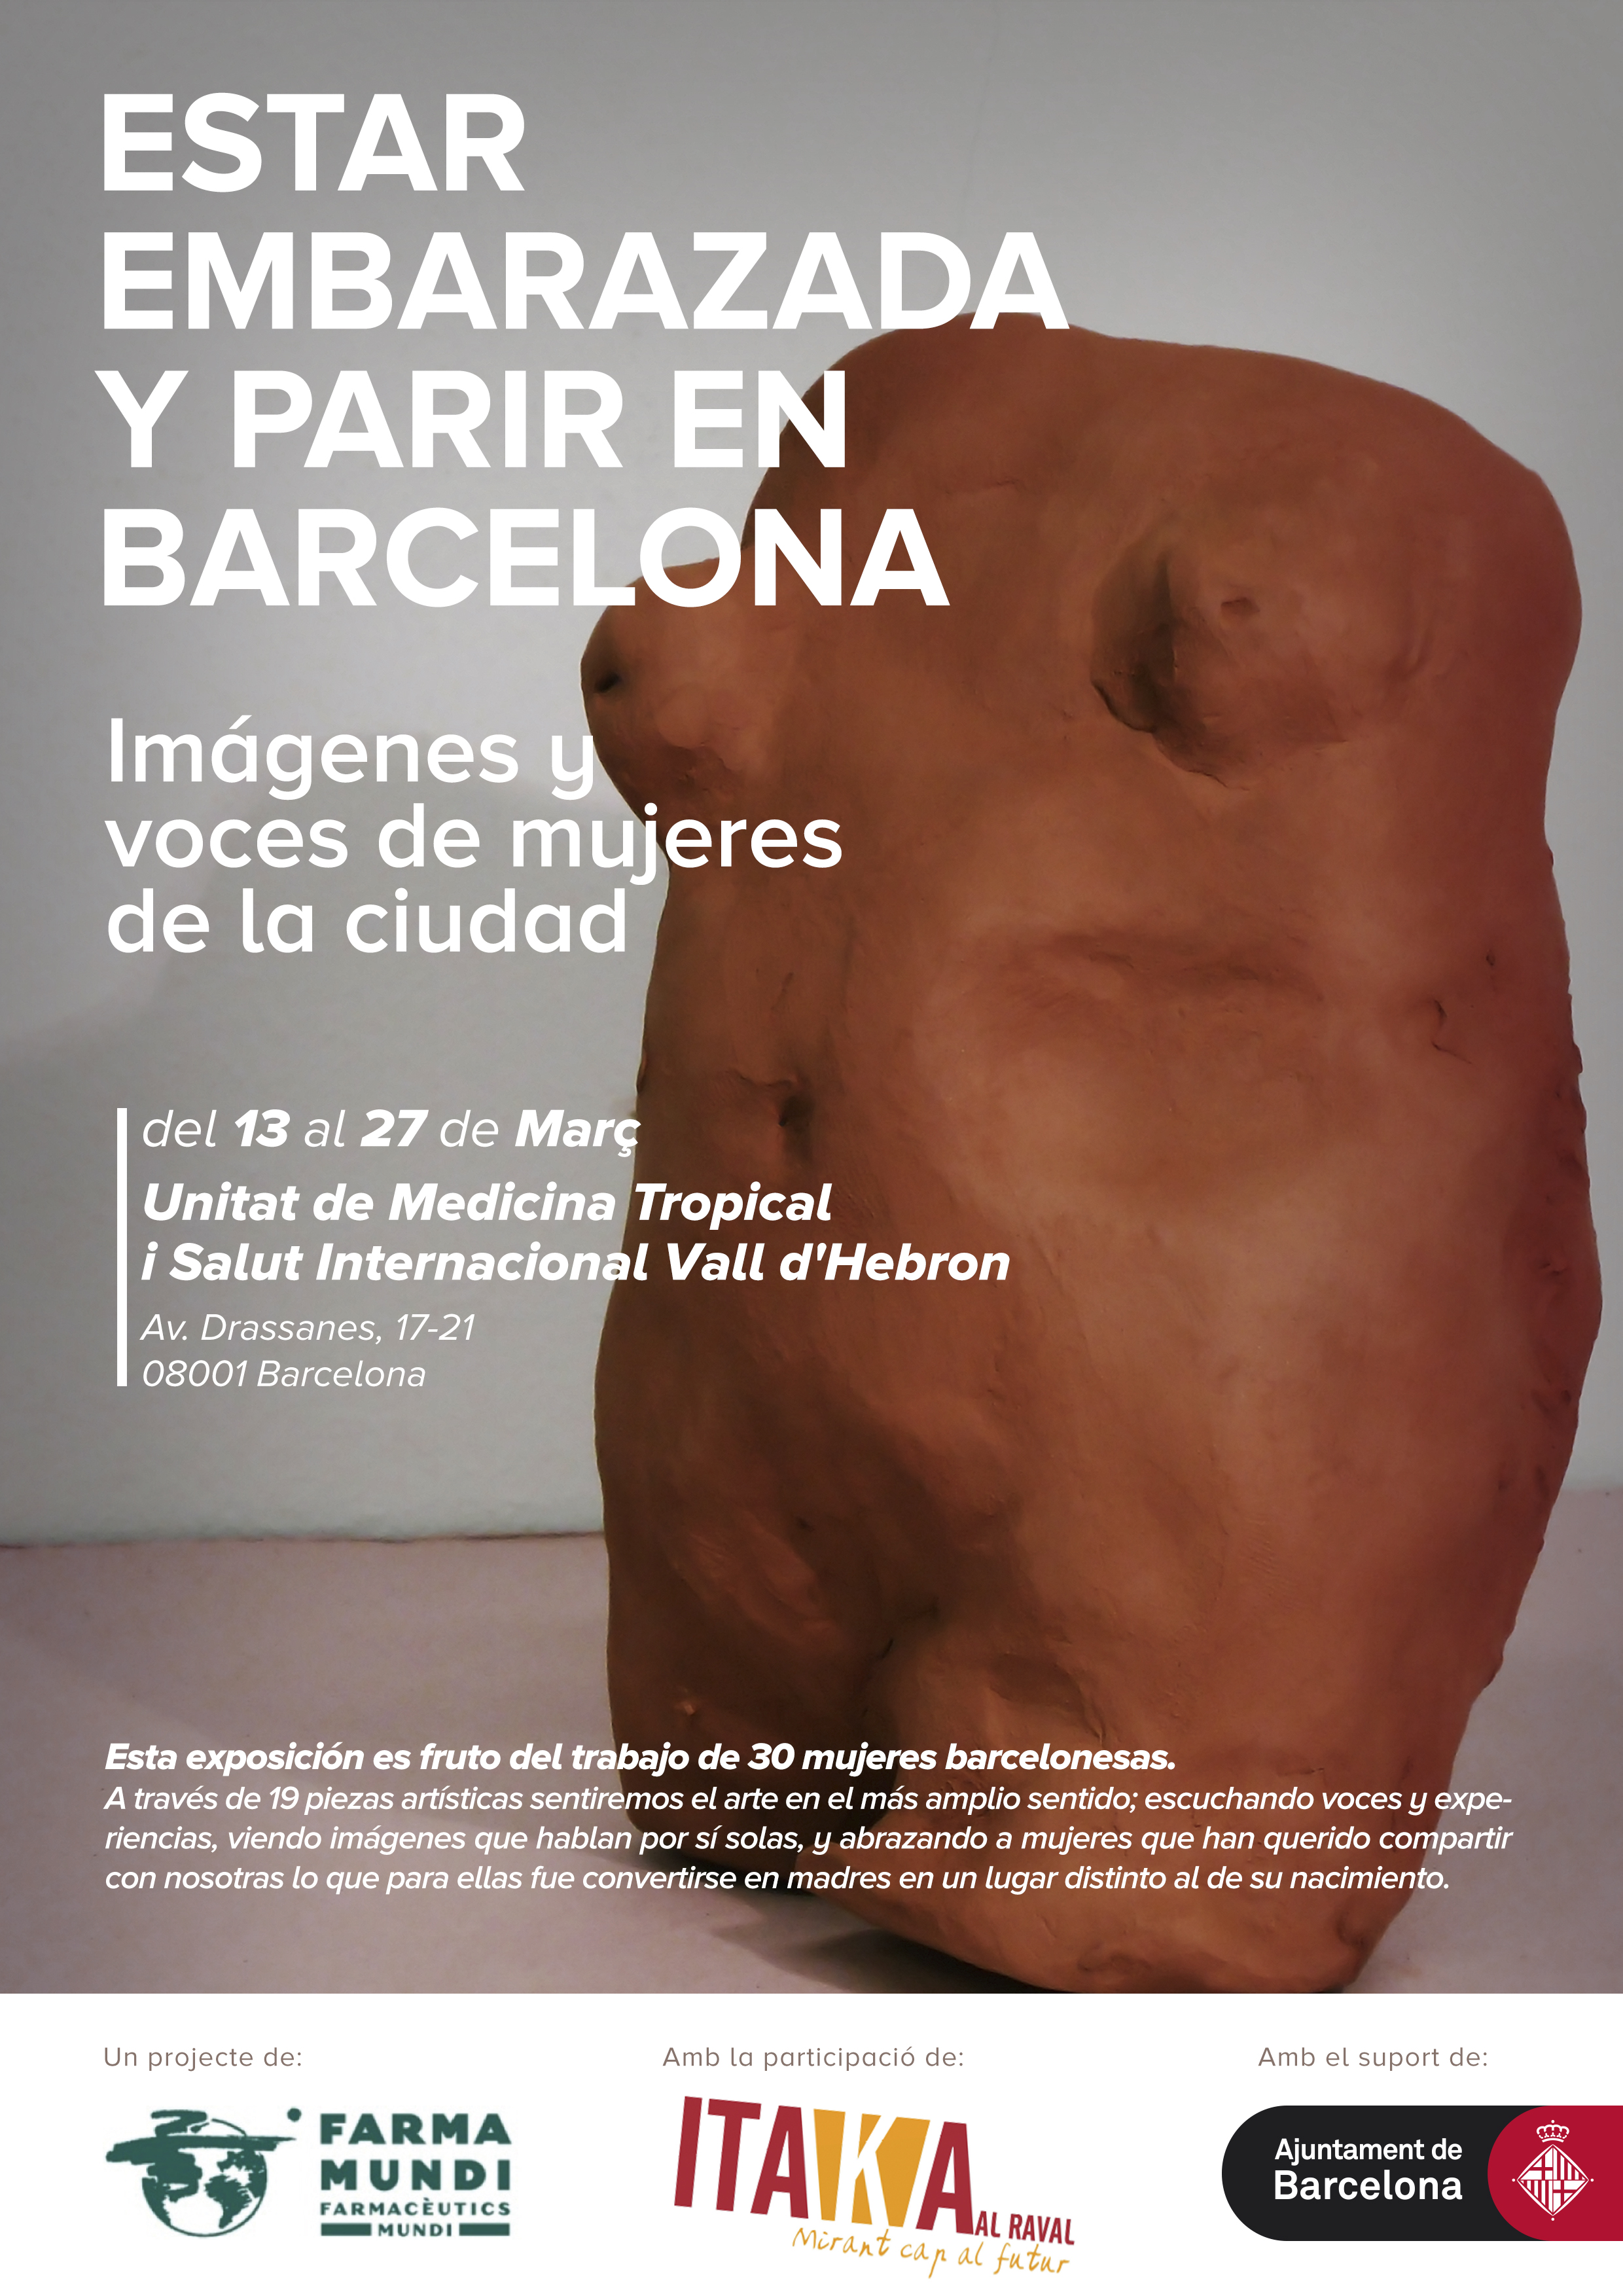 Farmamundi organiza la exposición Estar embarazada y parir en Bacelona